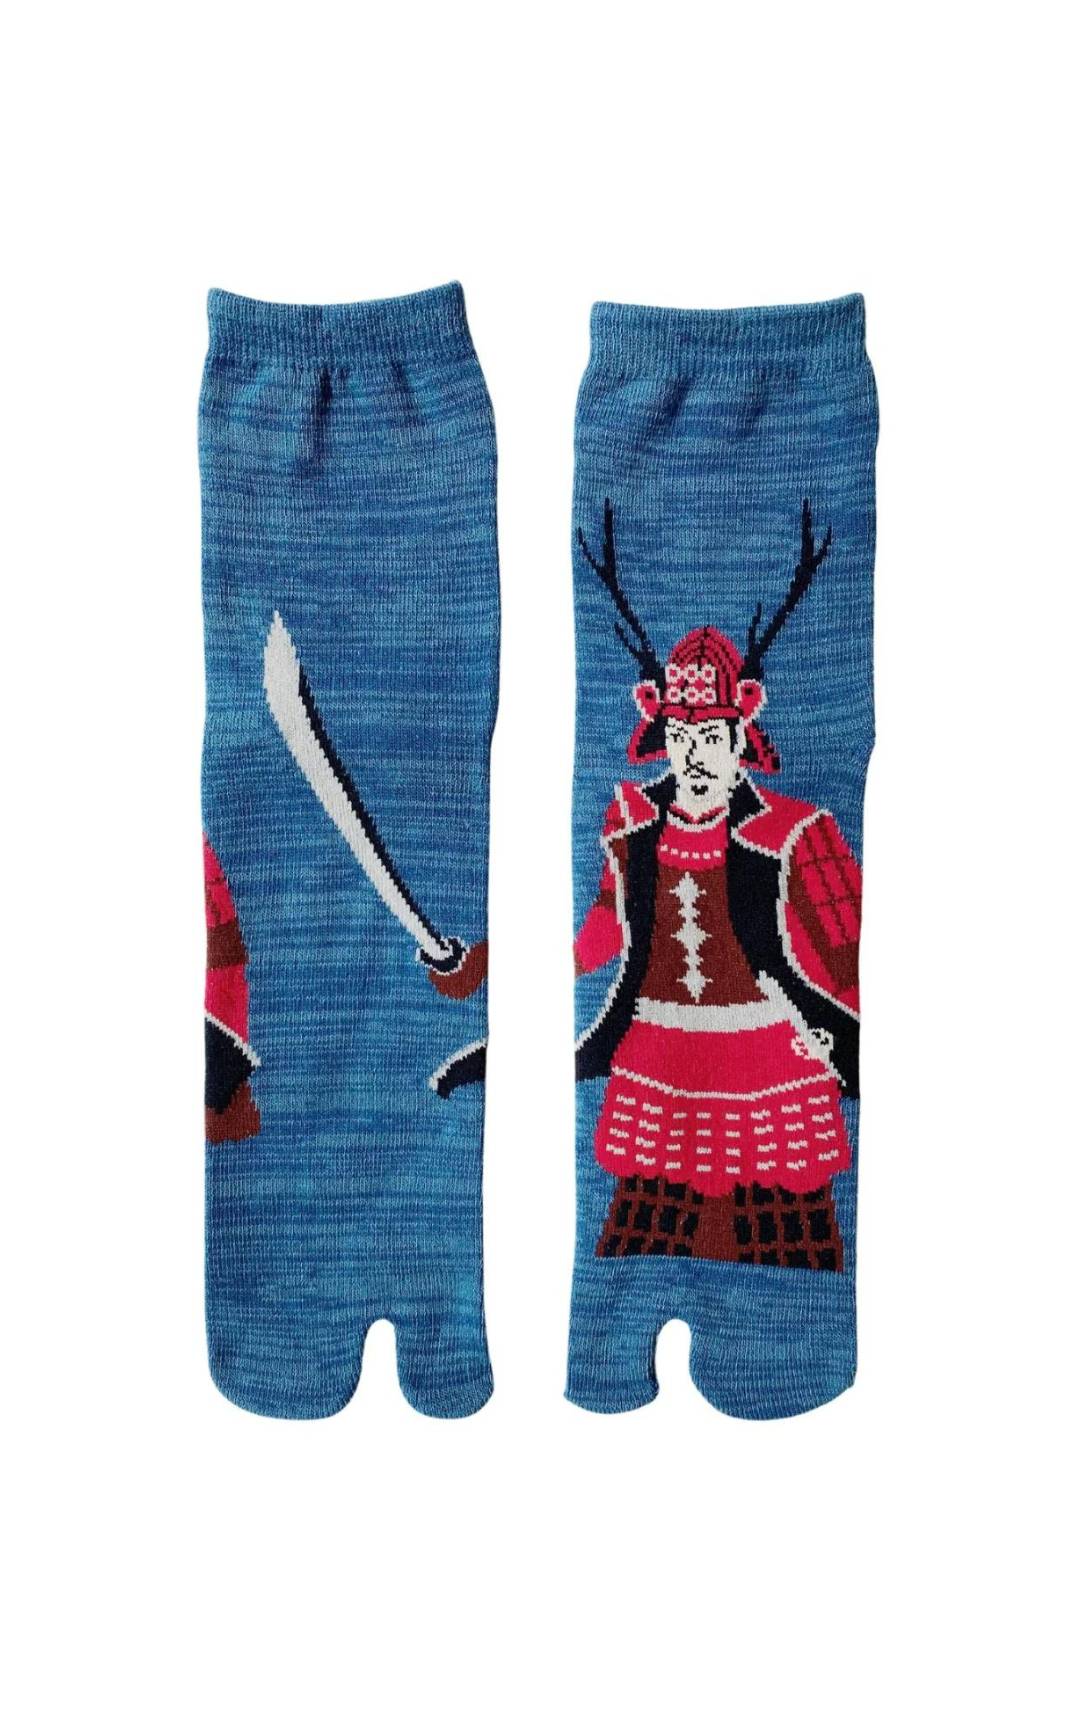 Tabi Toe Socks, Samurai Design